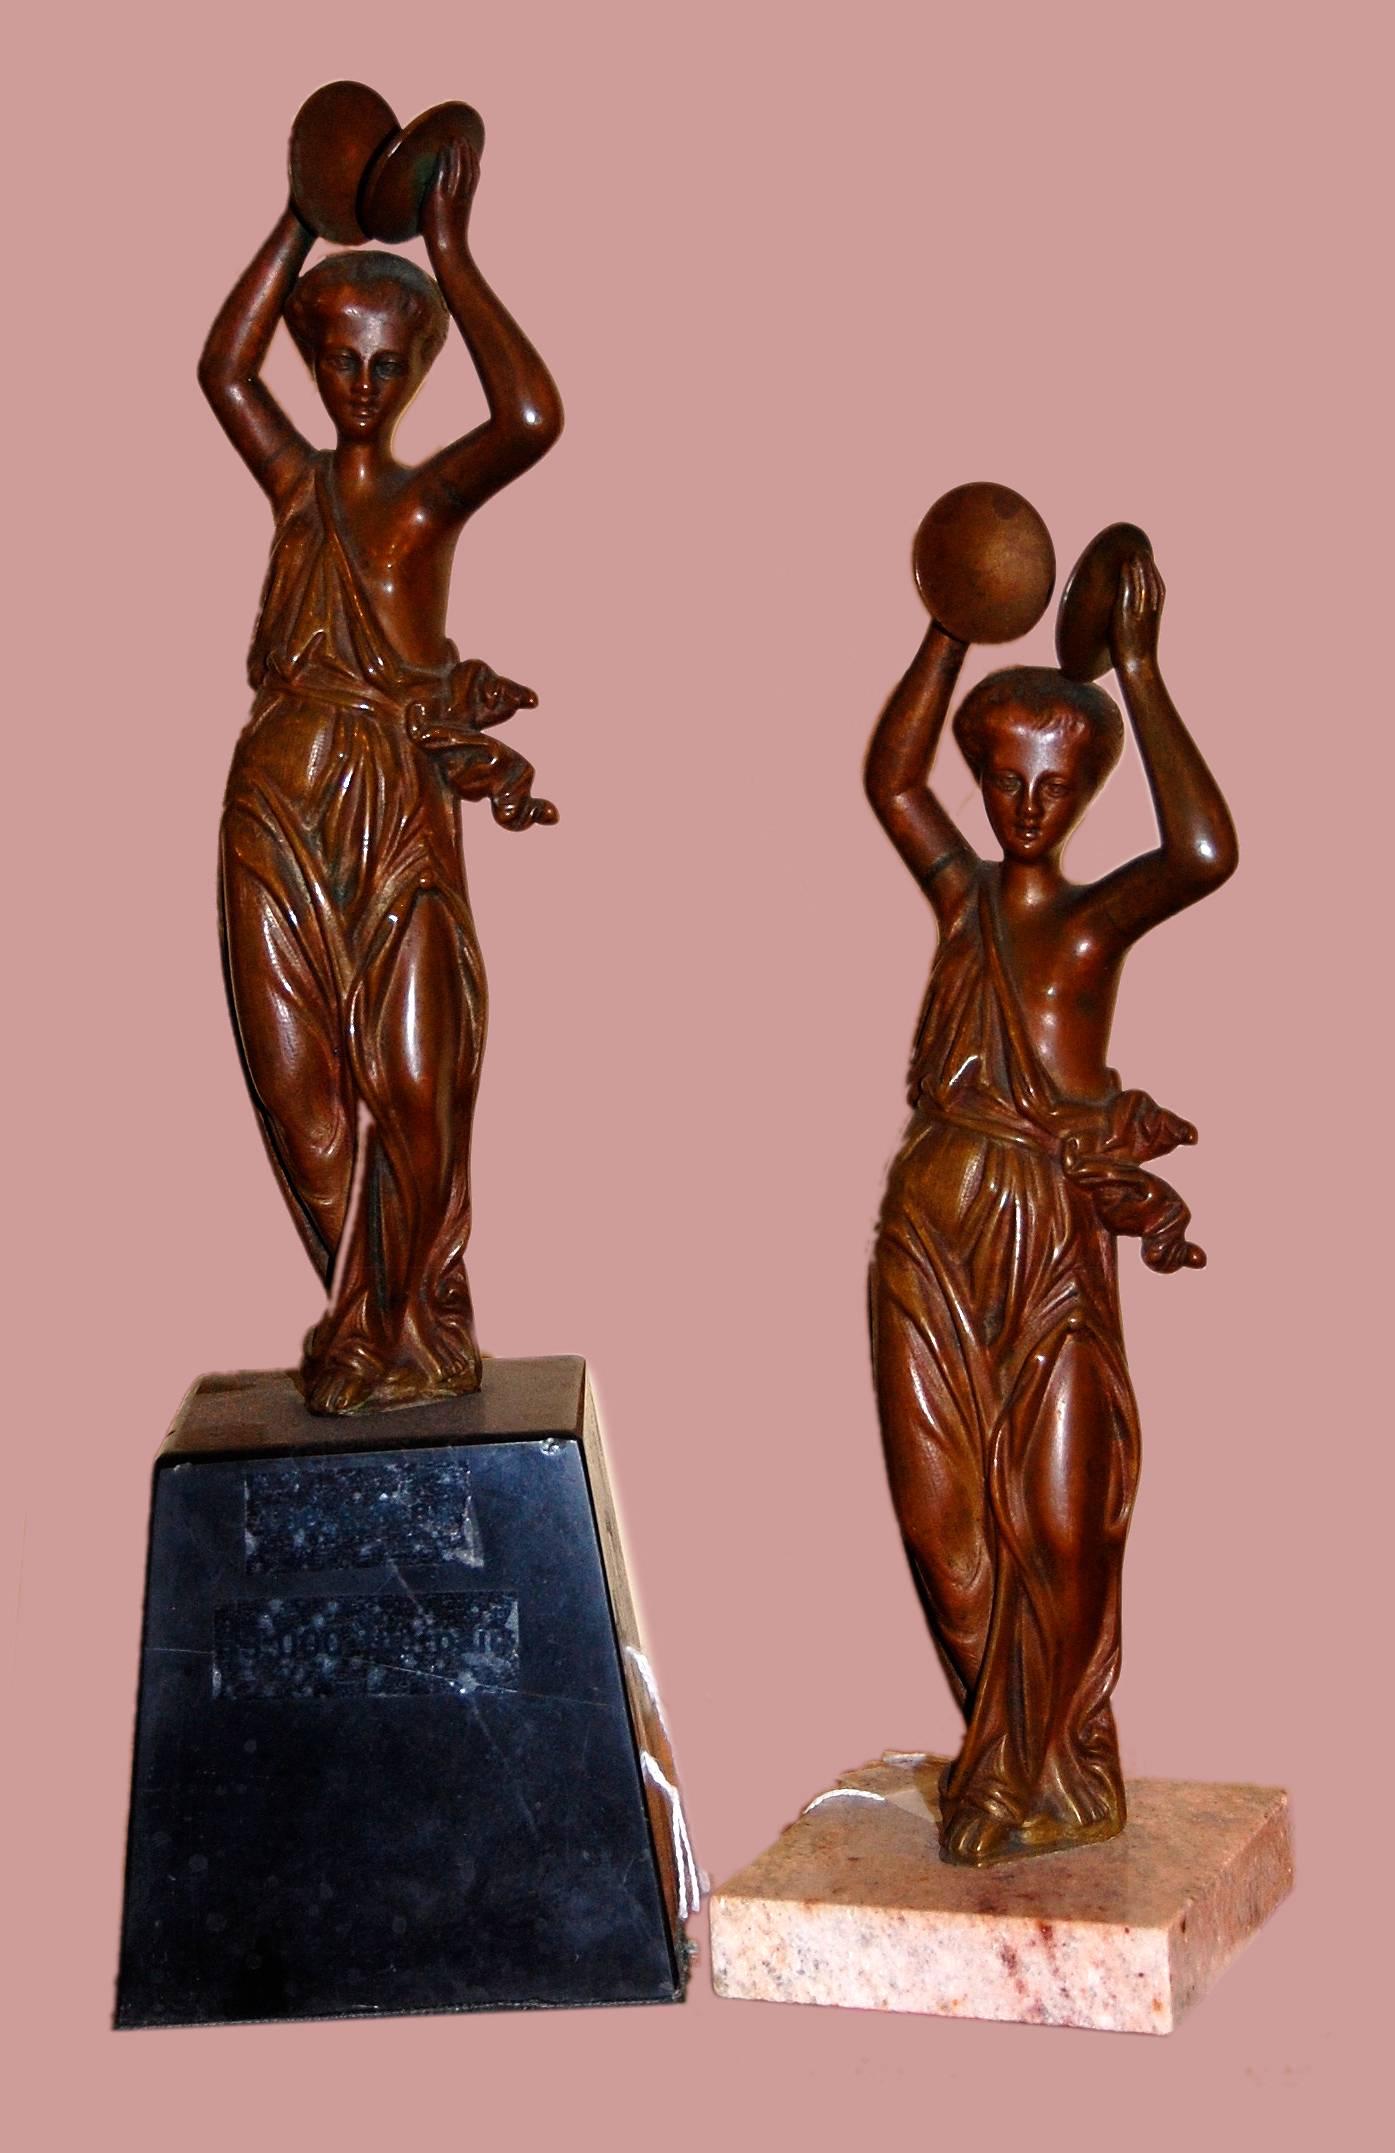 Pair of orientalist sculptures; bronze - Sculpture by Unknown